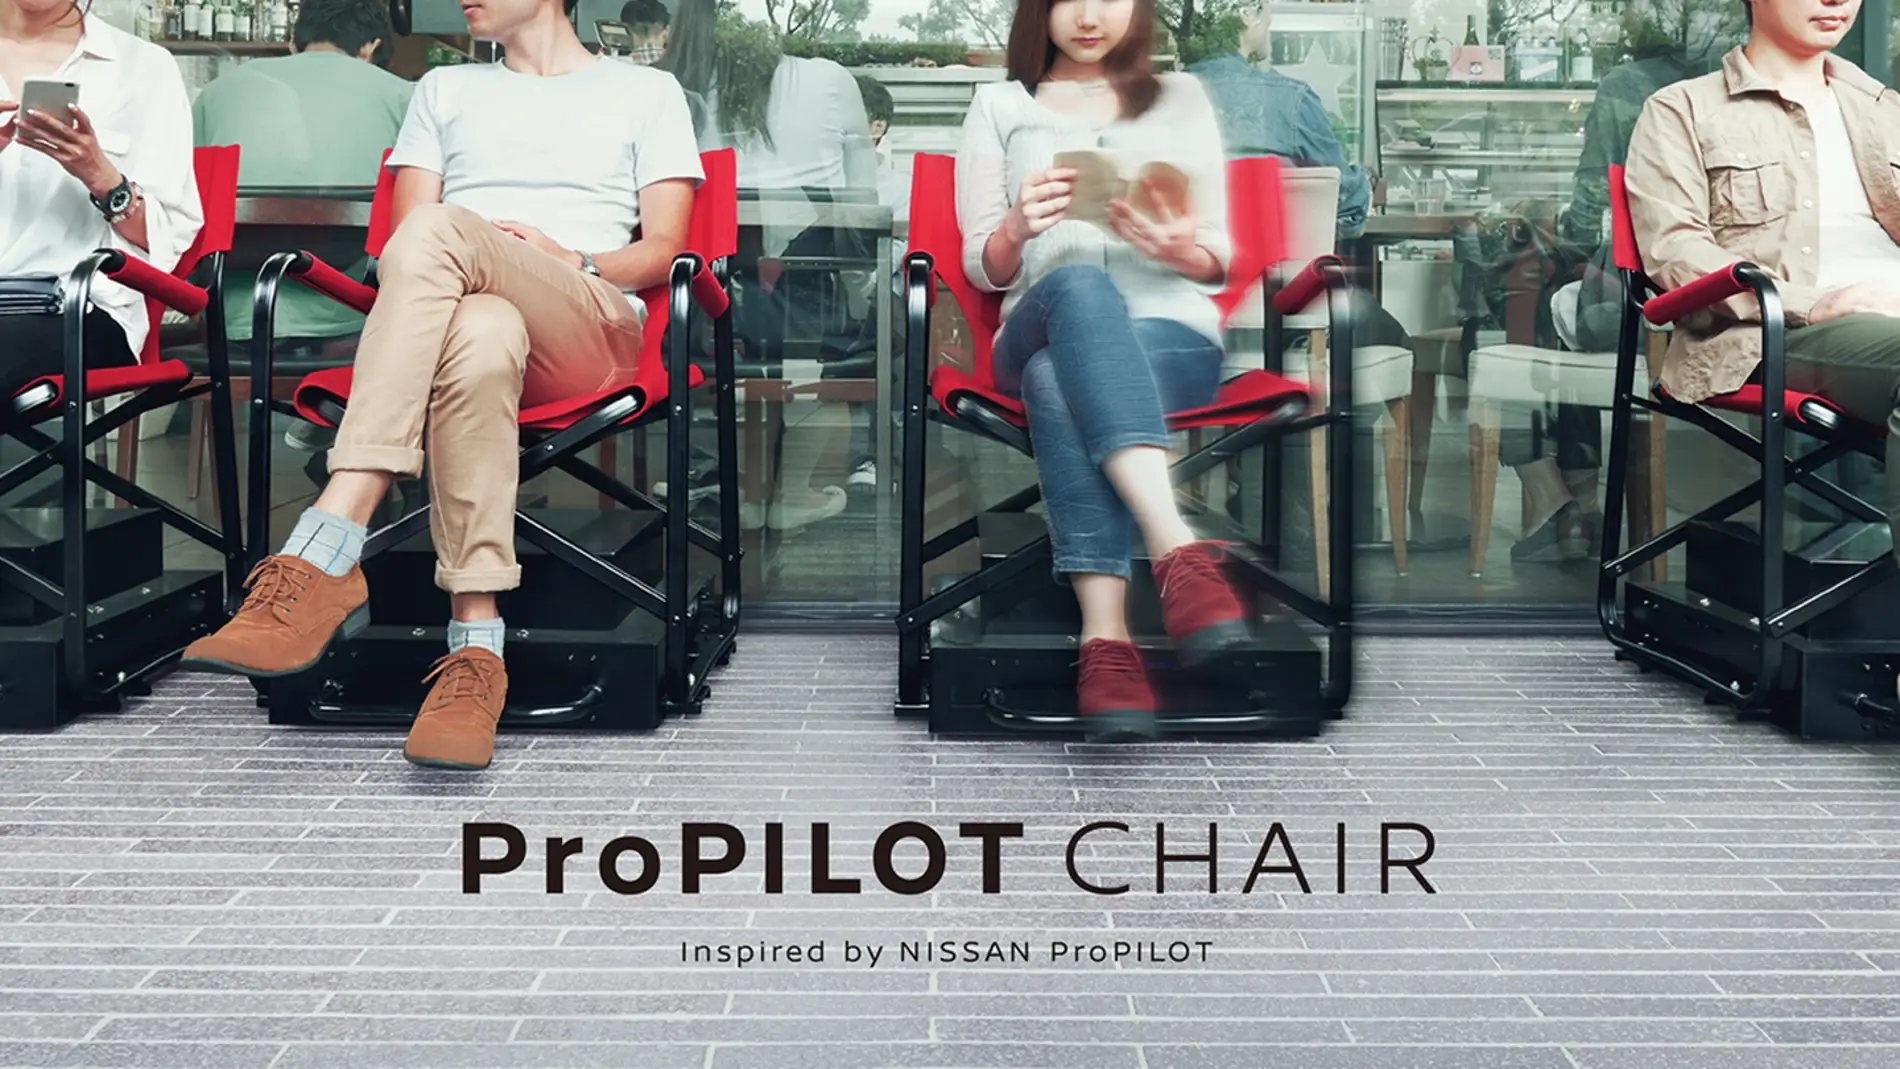 nissan-propilot-chair-2016-001.jpg